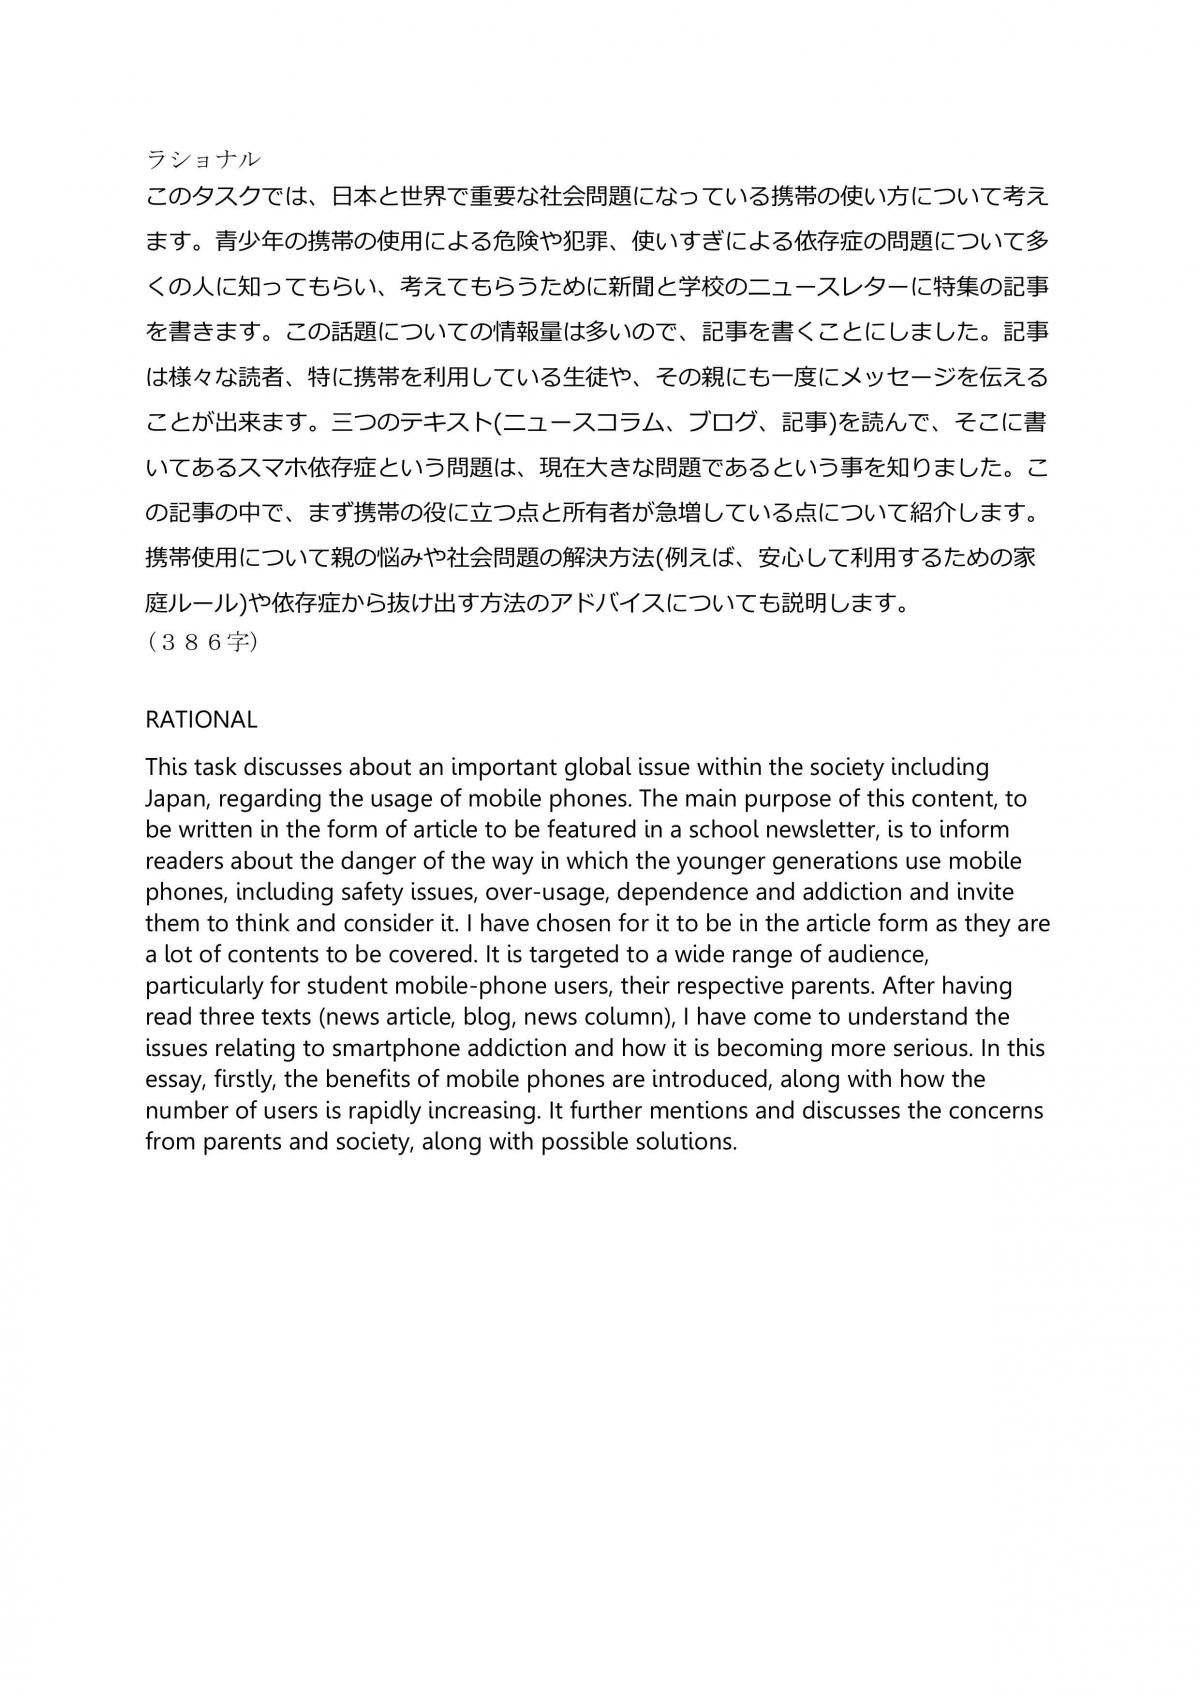 japan short essay